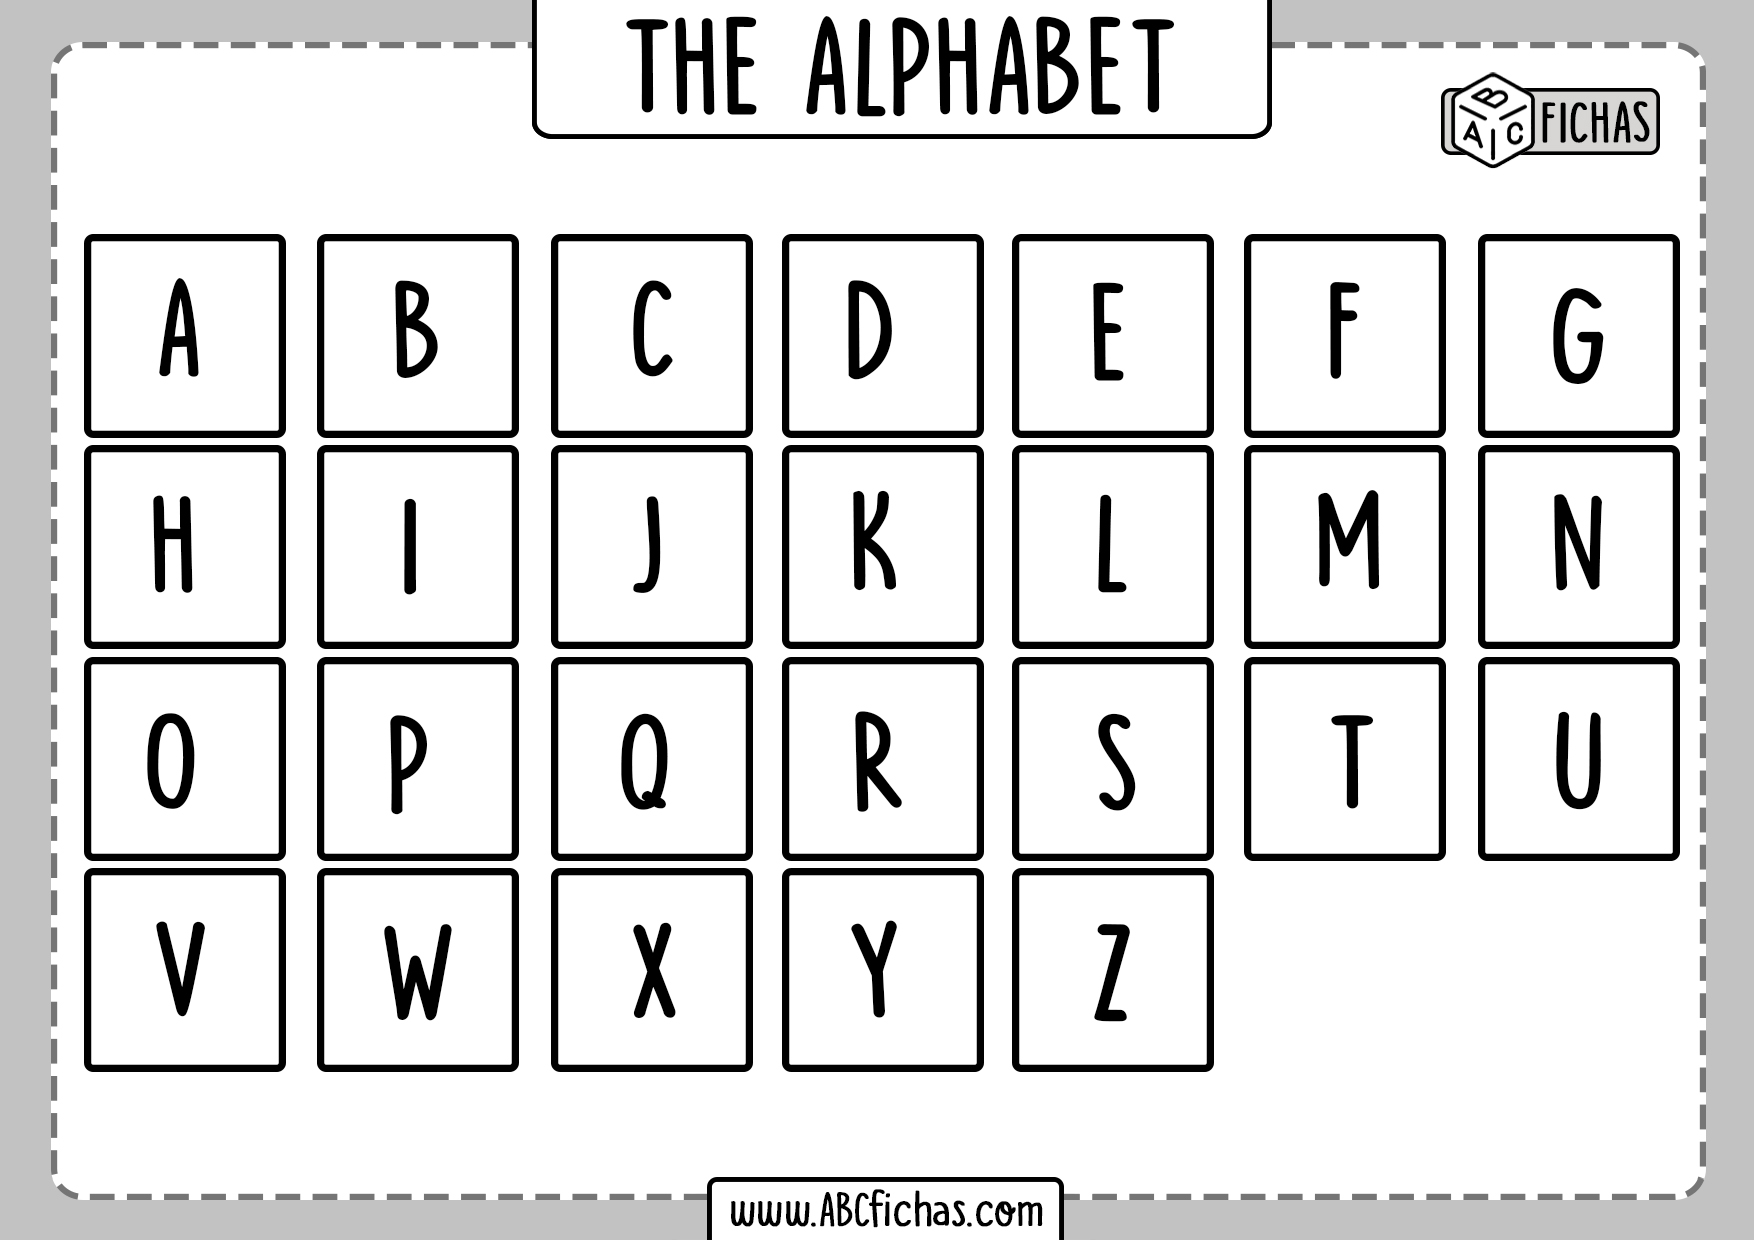 full-alphabet-worksheet-abc-fichas